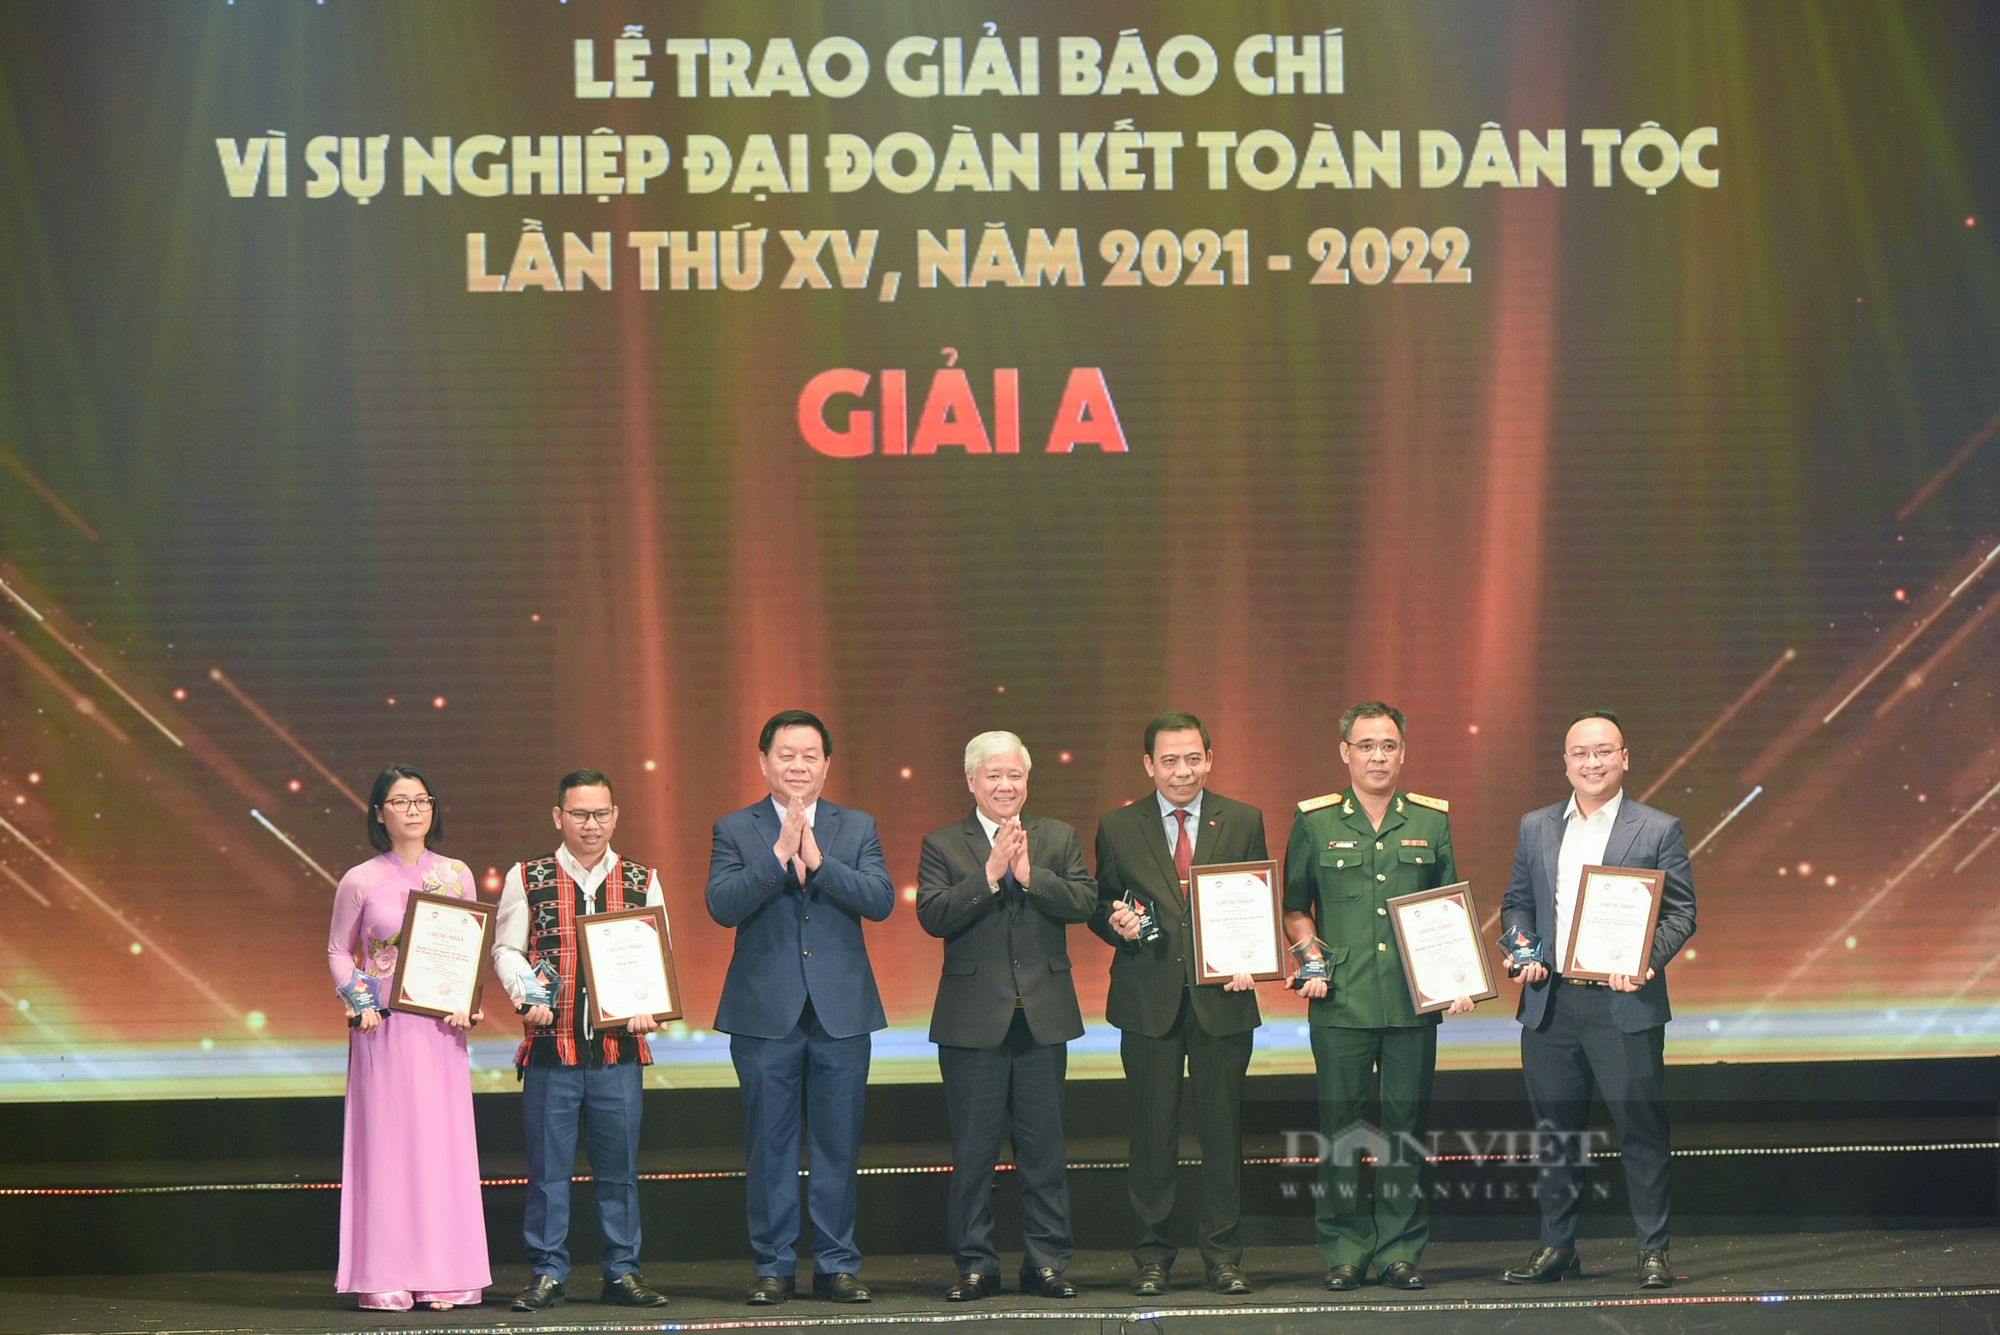 Báo NTNN/Điện tử Dân Việt giành giải báo chí &quot;Vì sự nghiệp Đại đoàn kết toàn dân tộc&quot; năm 2022 - Ảnh 8.